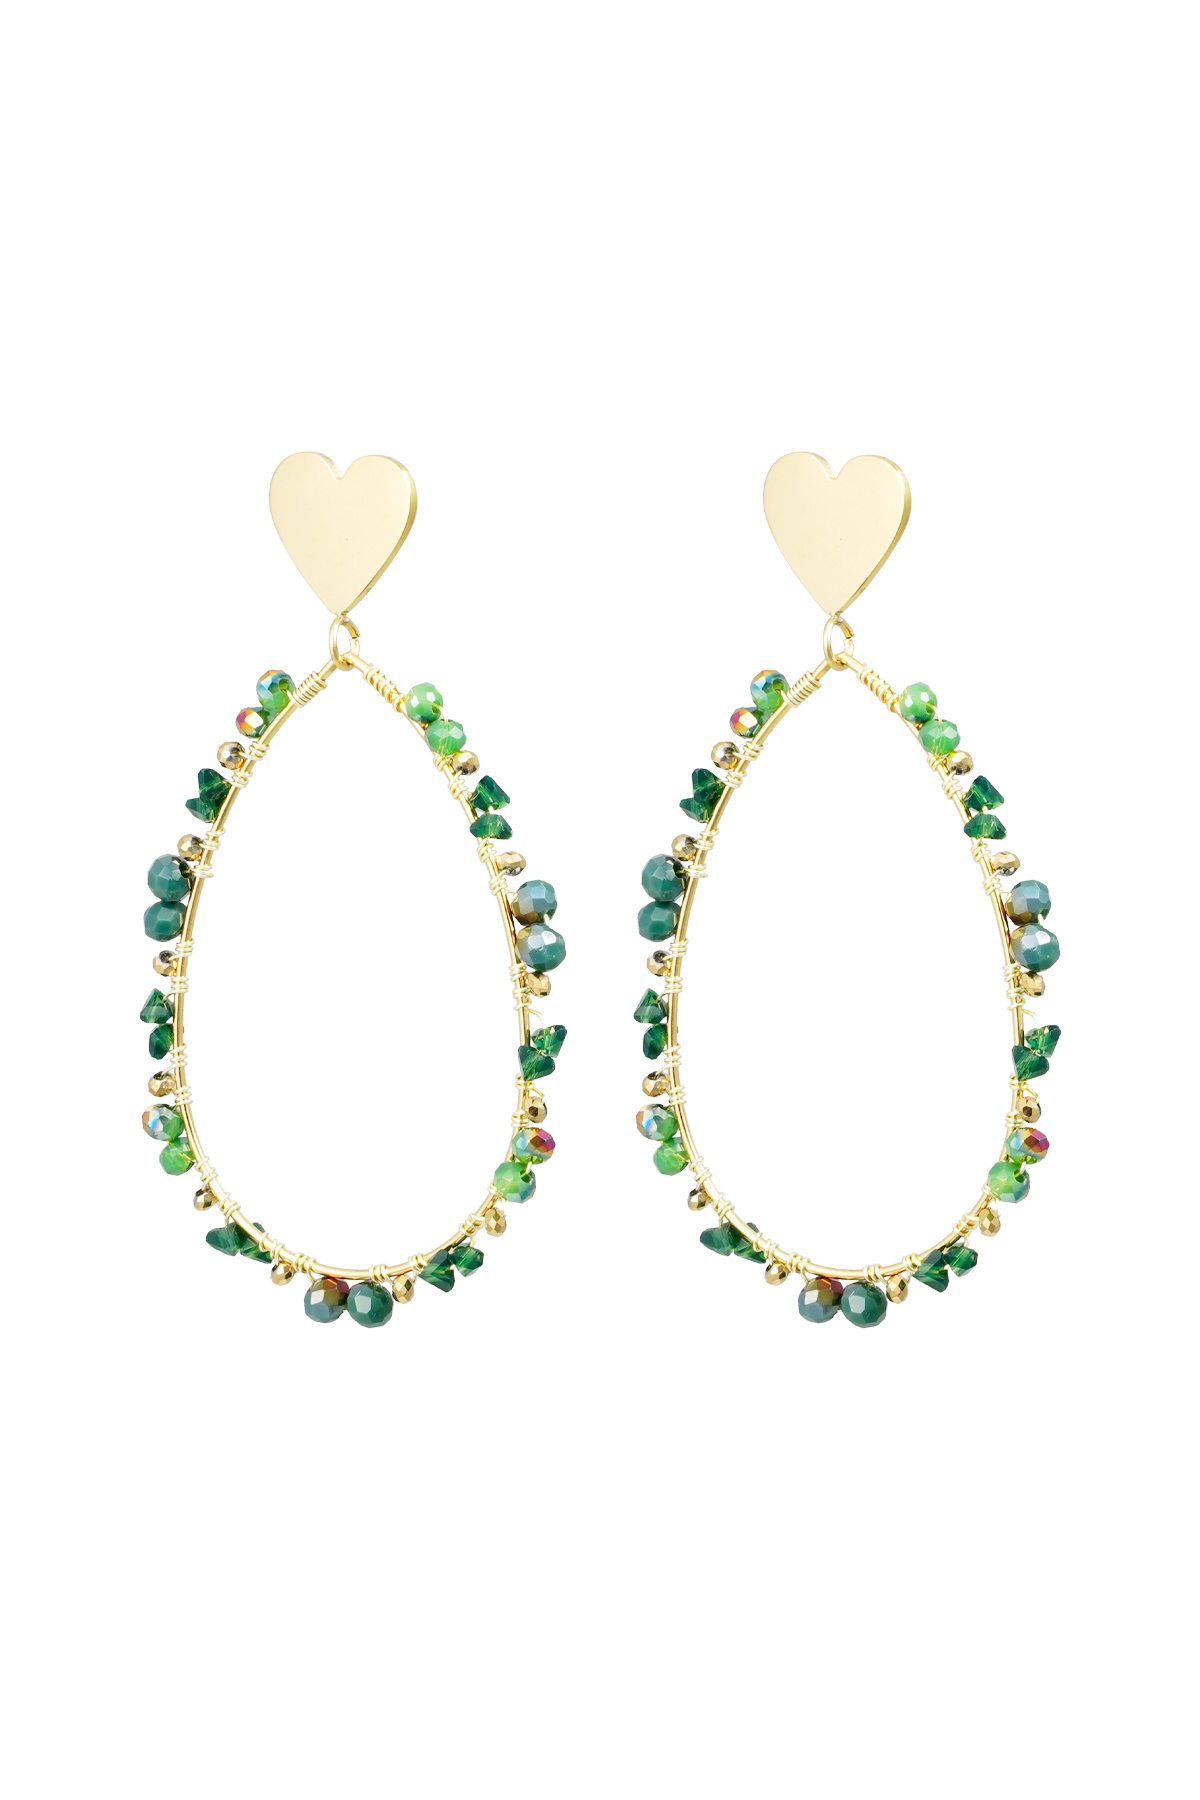 Ovale Ohrringe mit Perlen und Herz – gold/grün